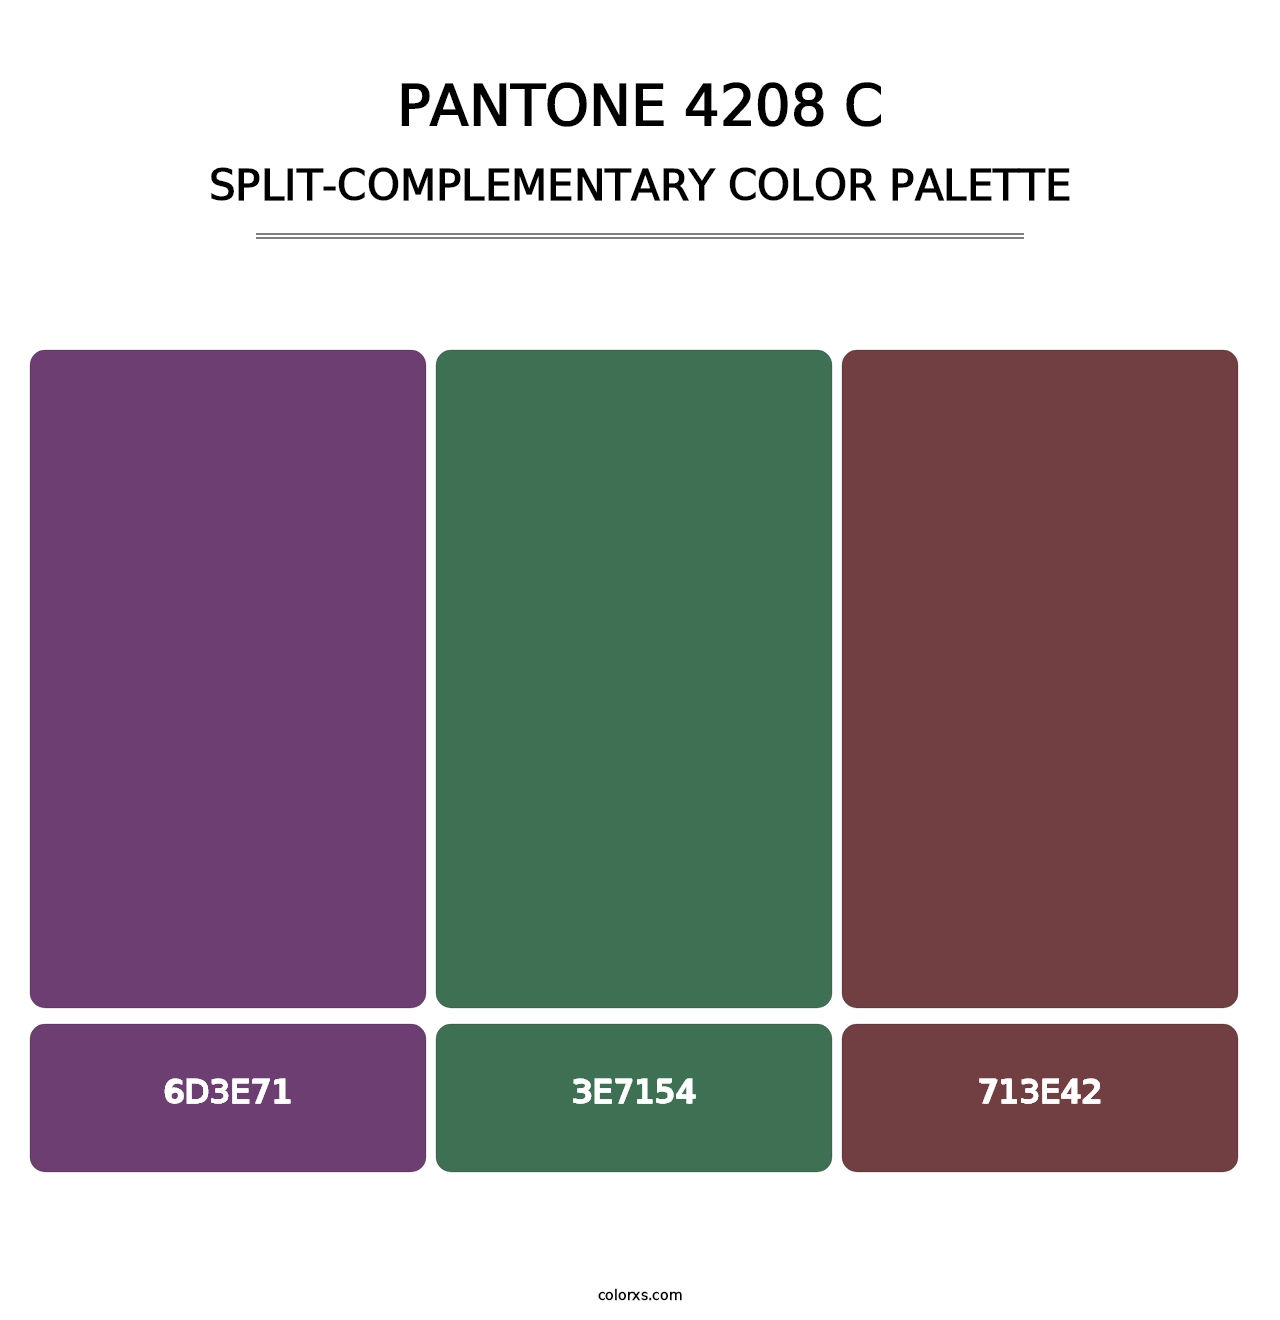 PANTONE 4208 C - Split-Complementary Color Palette